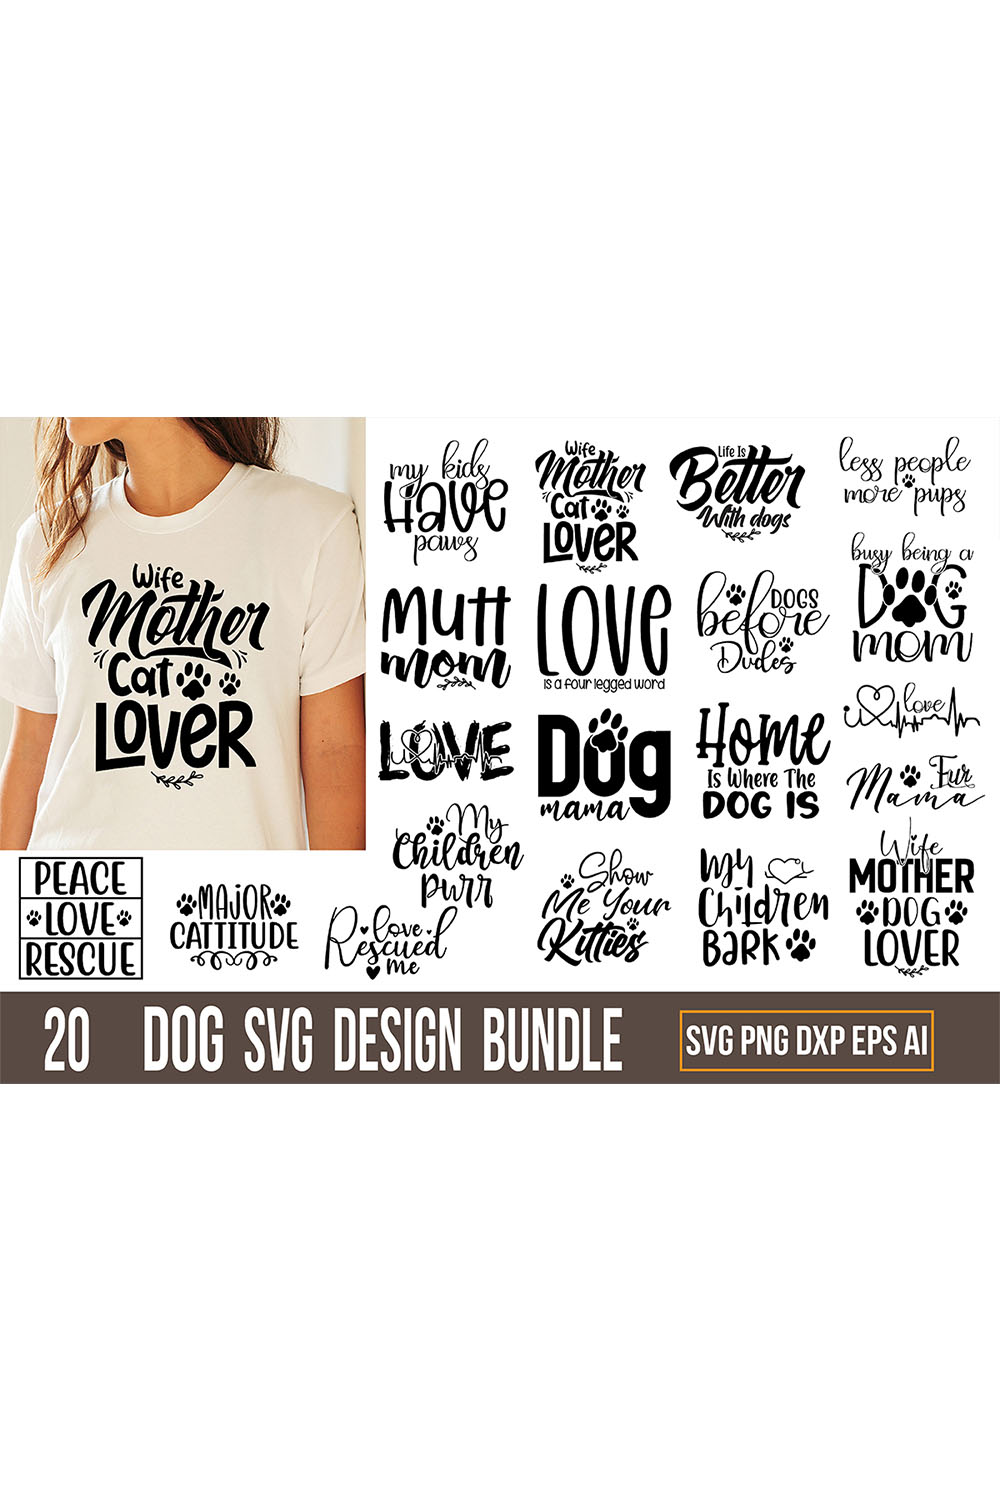 Dog Design SVG Bundle pinterest image.